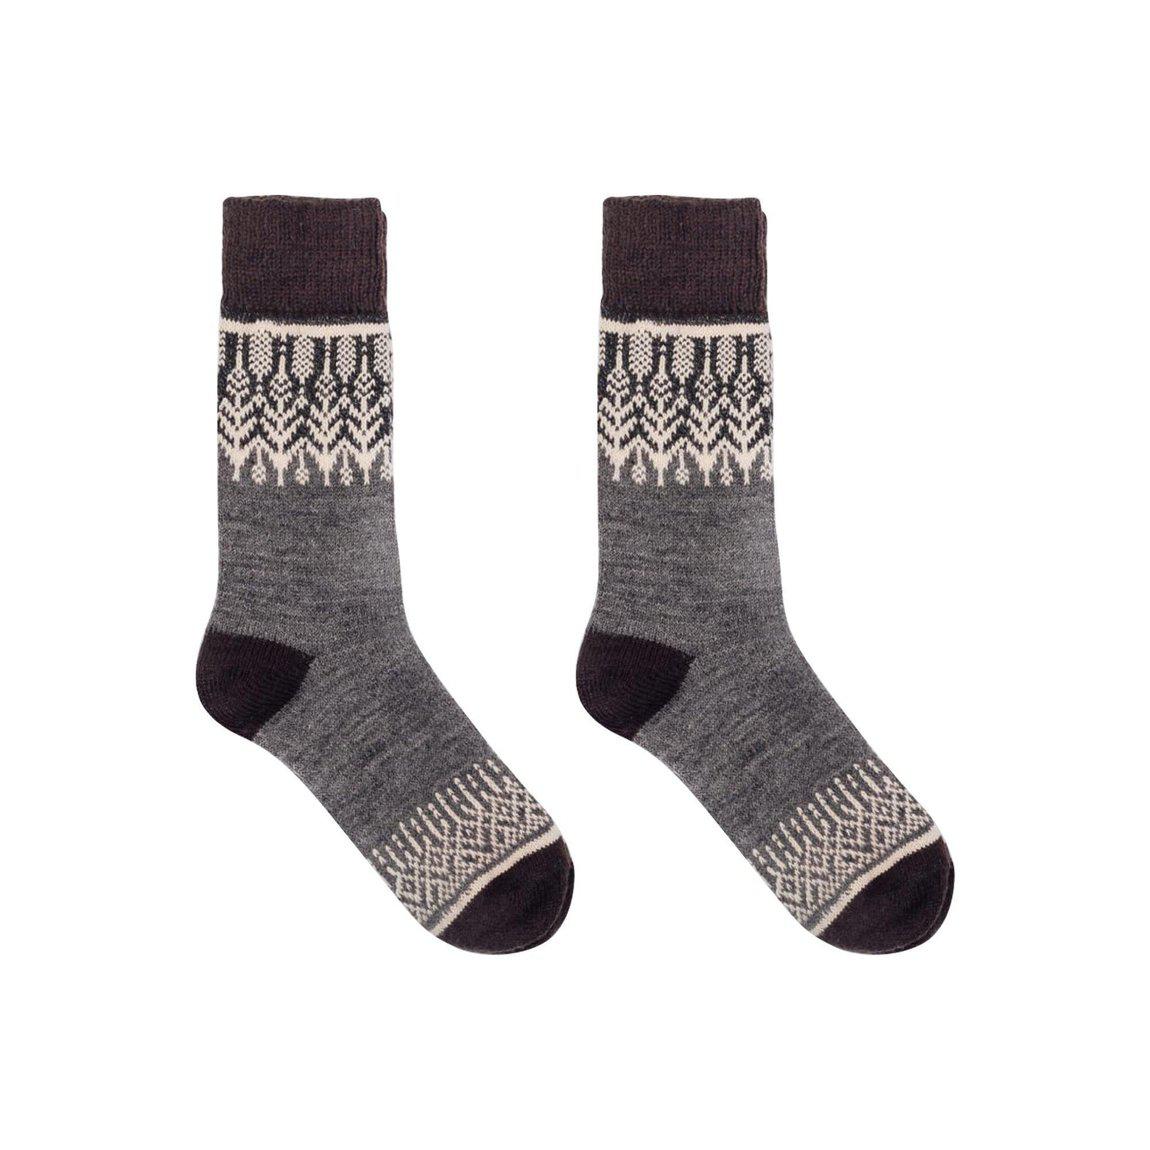 Nordic Socks Merino Wool in PERFORM™ (Yule - Navy) - Unisex - Nordic Wools